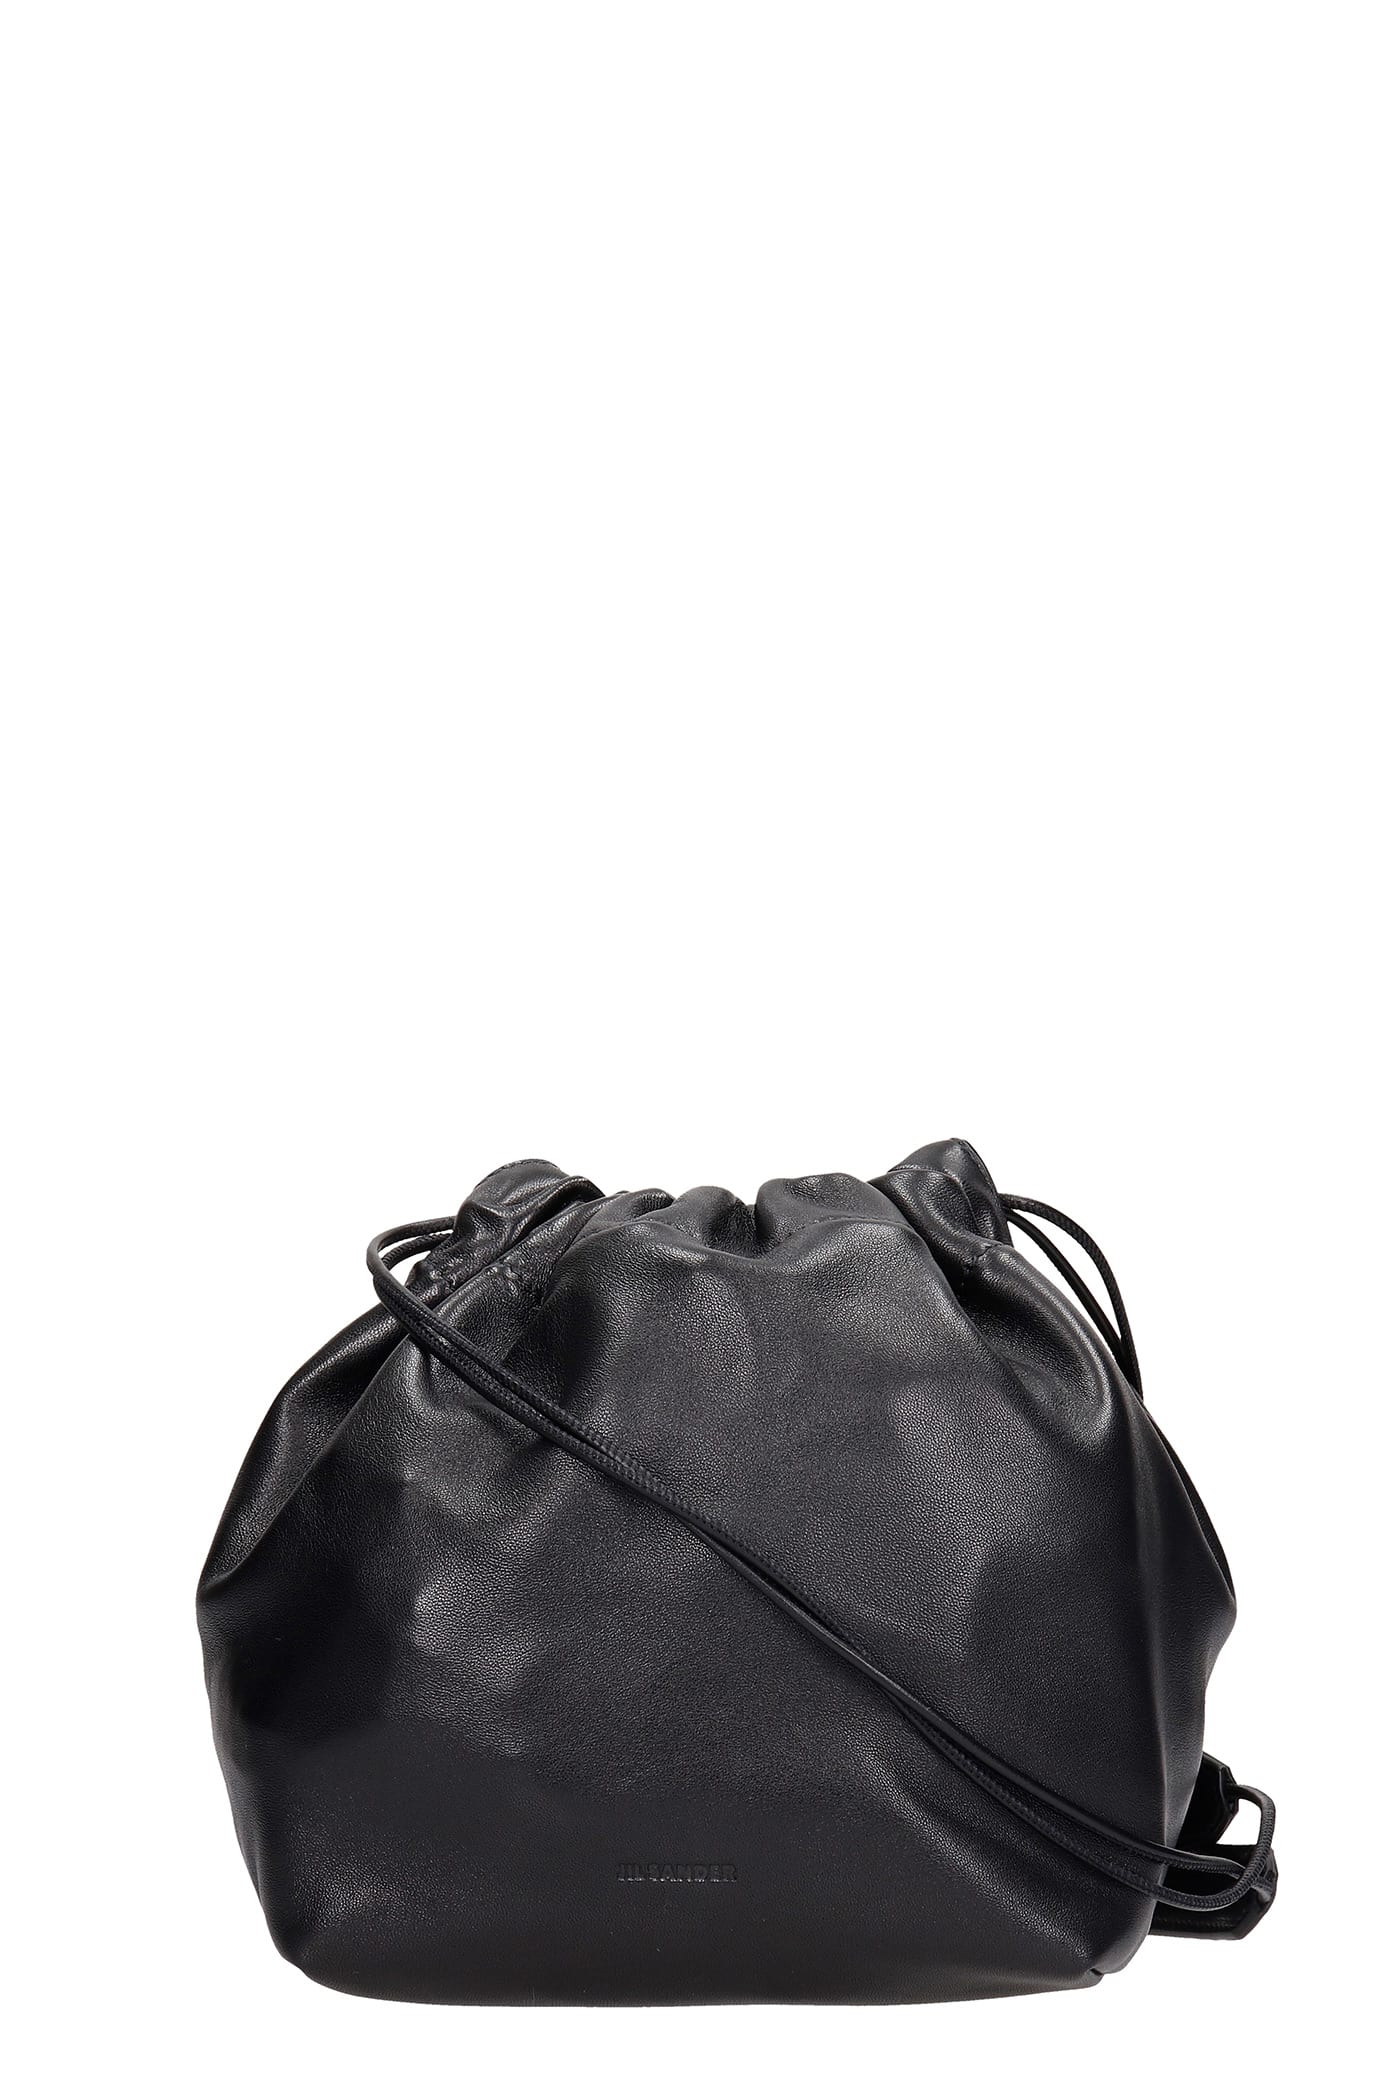 Jil Sander Drawstring Shoulder Bag In Black Leather